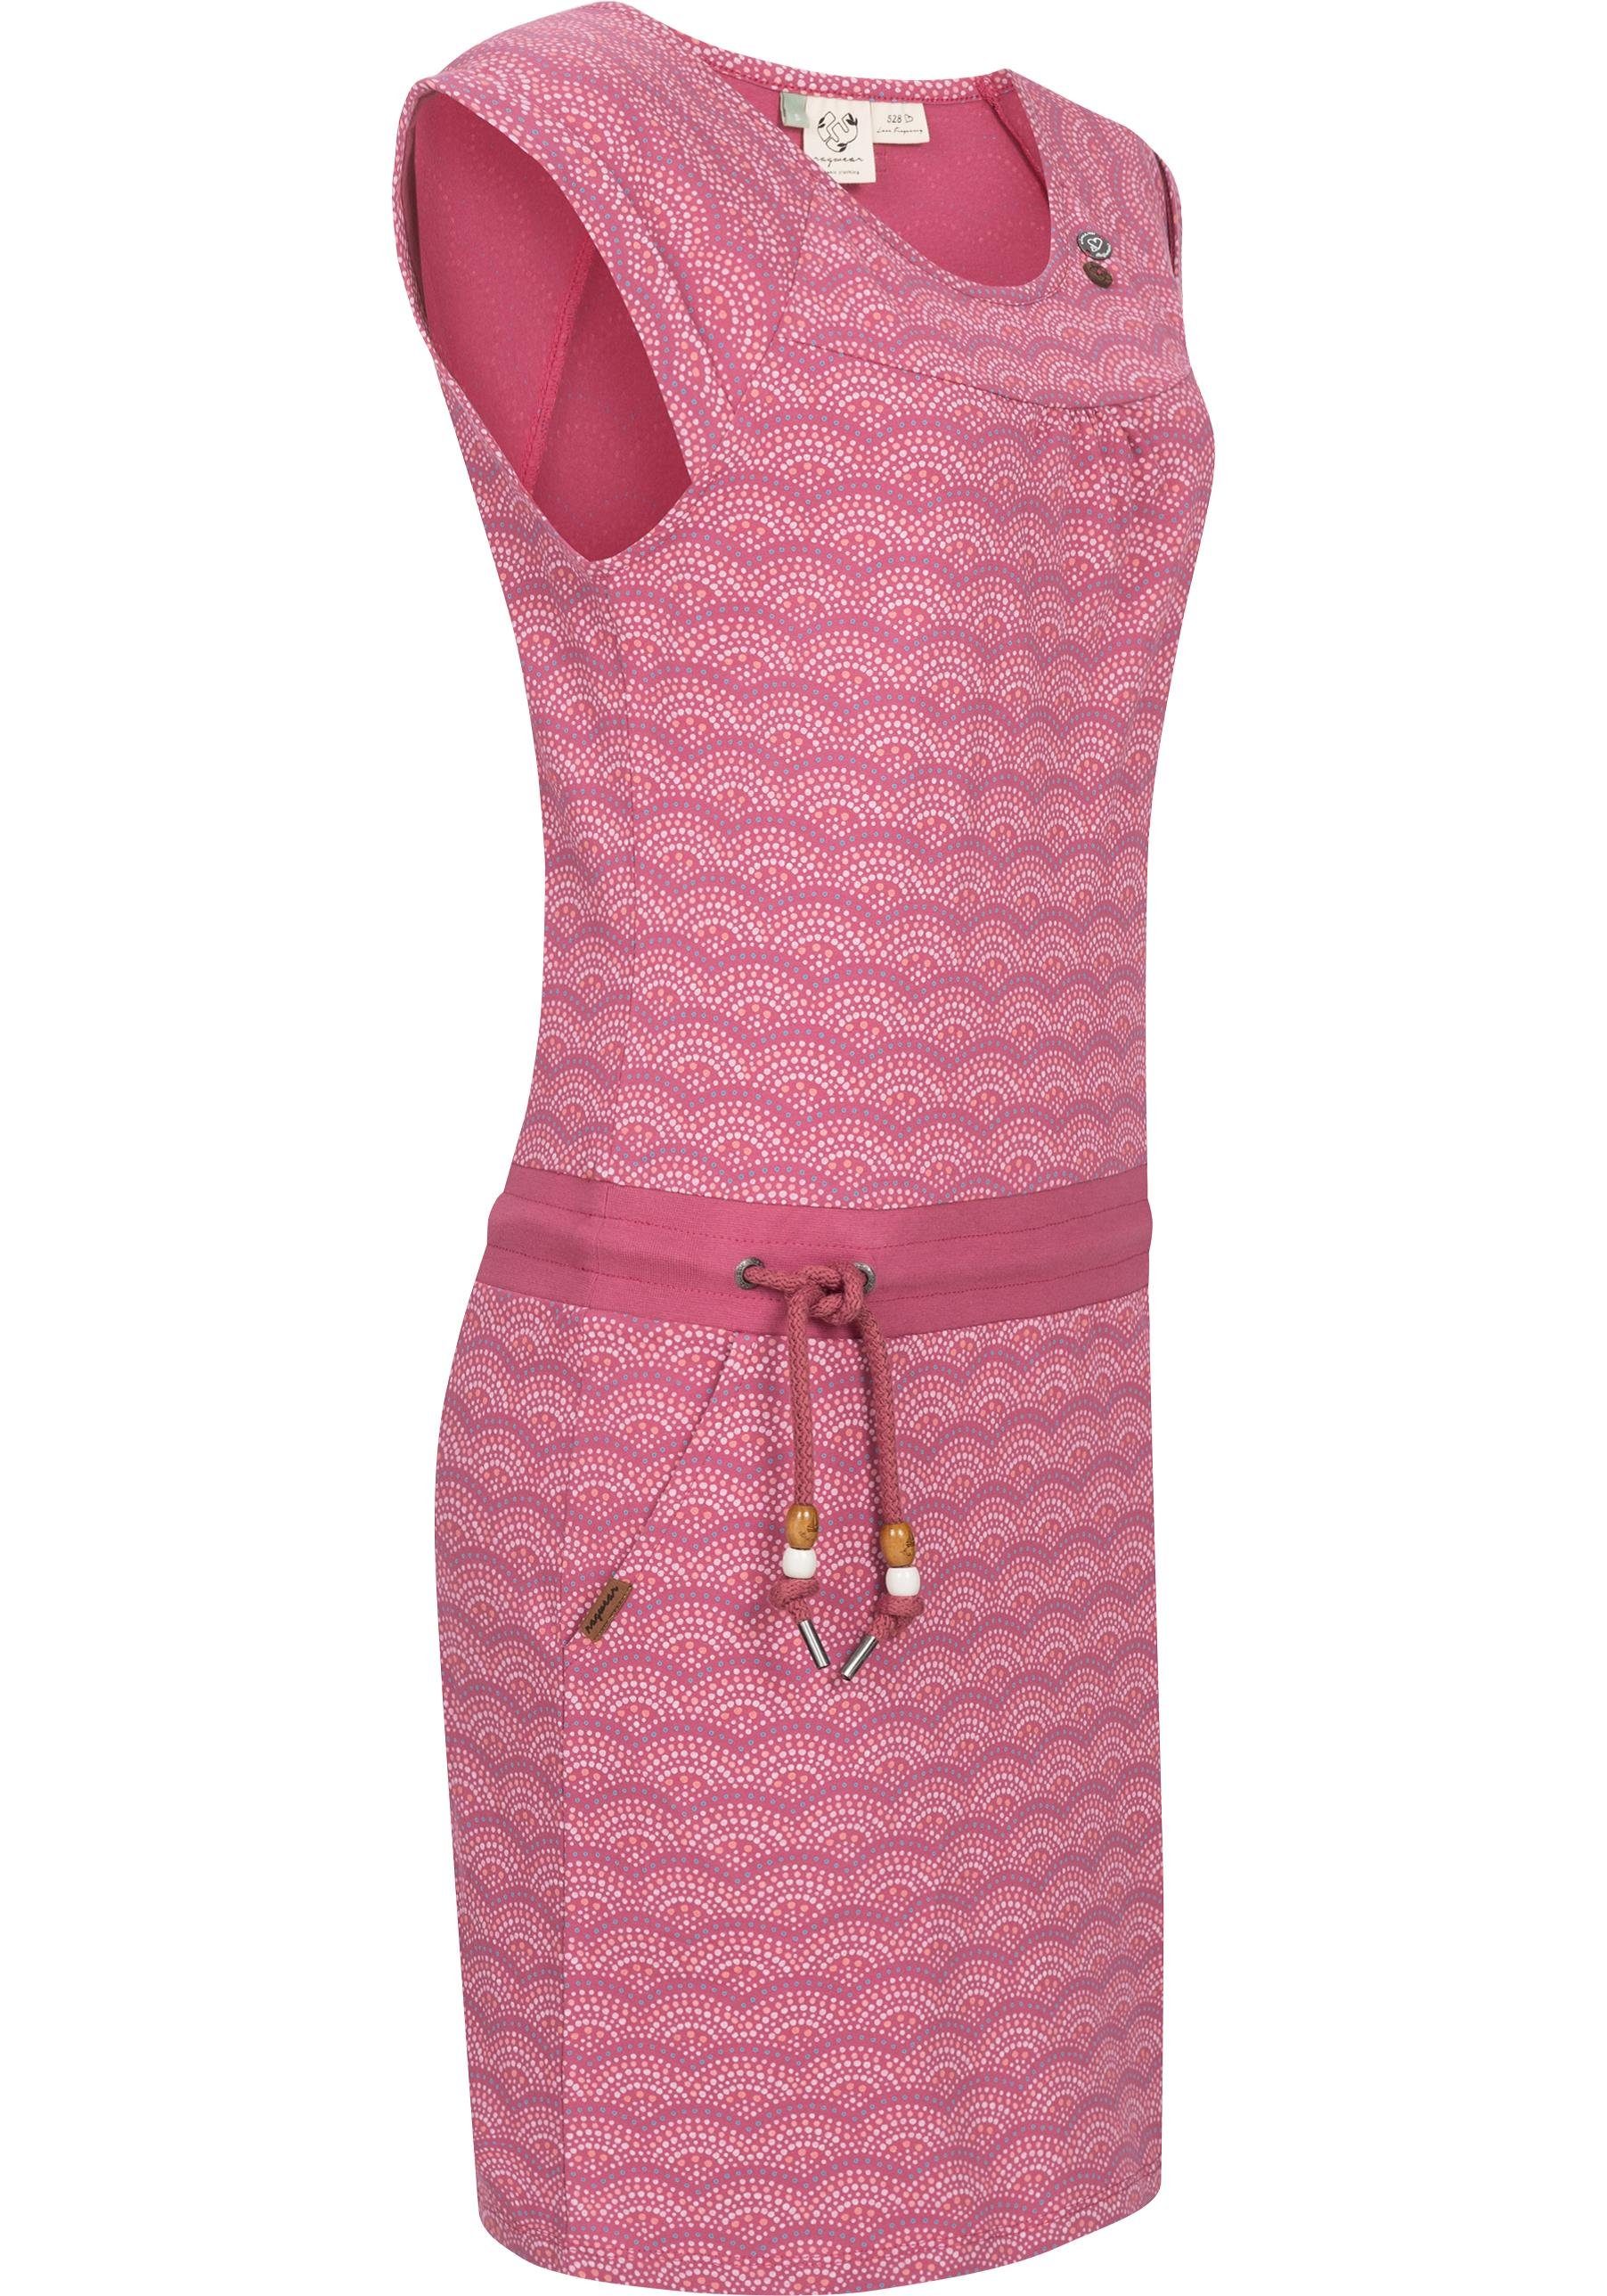 Ragwear Sommerkleid optimal C Intl. stylischem Print geeignet leichtes Das Penelope Strand-Kleid Jahreszeit Shirtkleid Print, die ist warme für mit